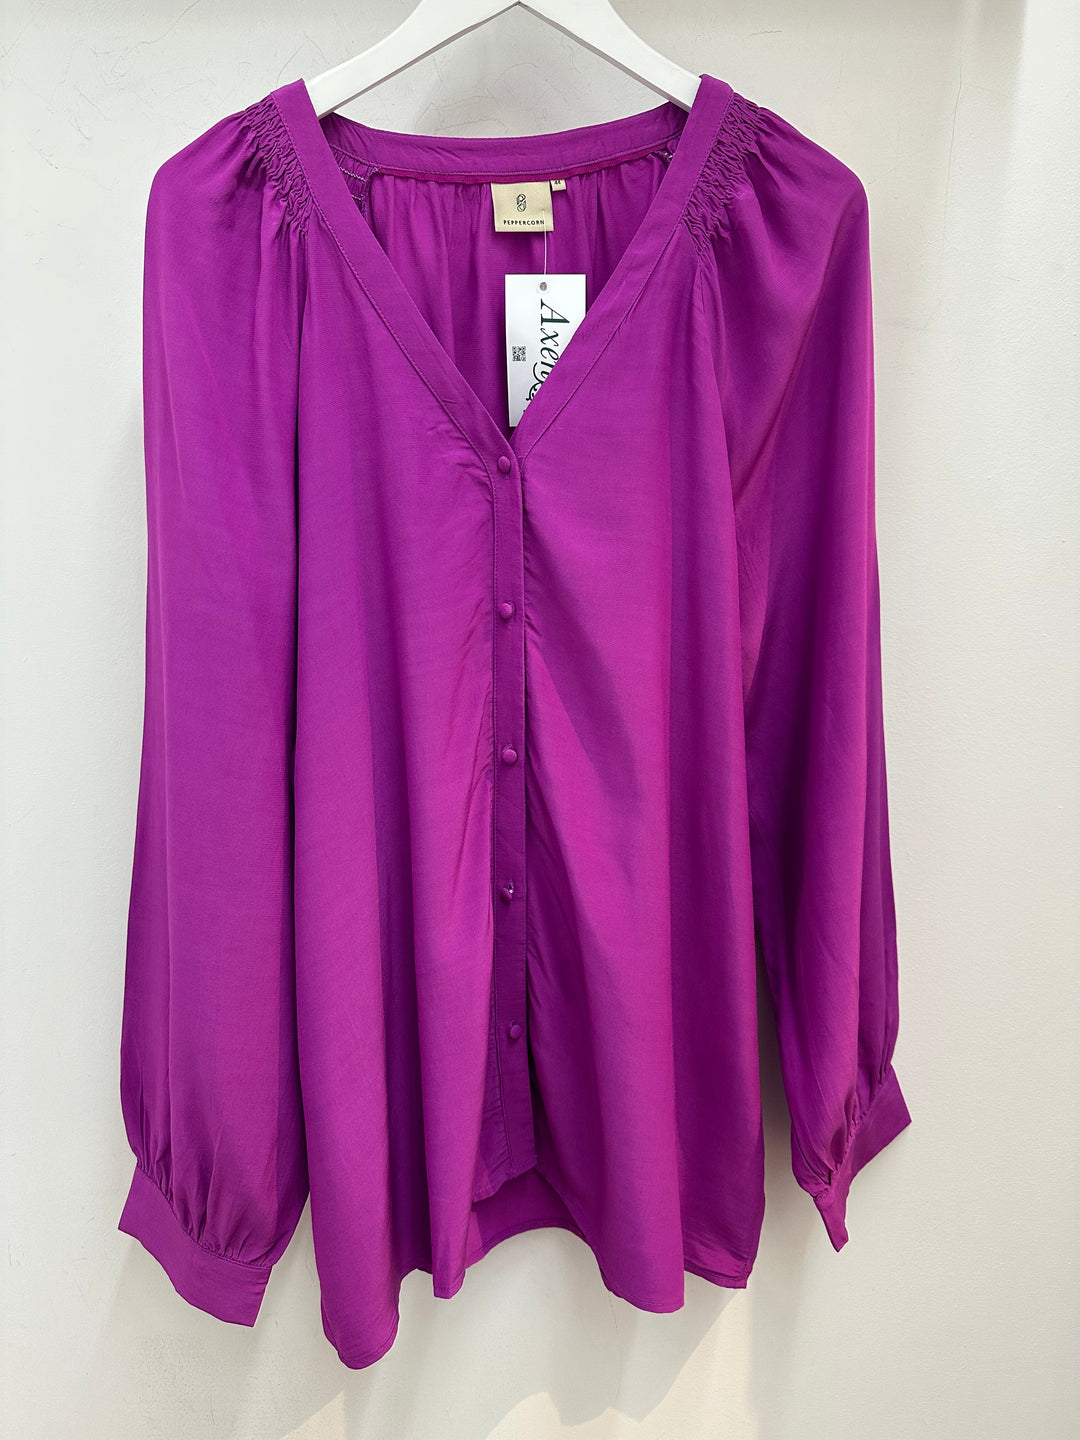 blouse met V-hals - peppercorn - - grote maten - dameskleding - kledingwinkel - herent - leuven